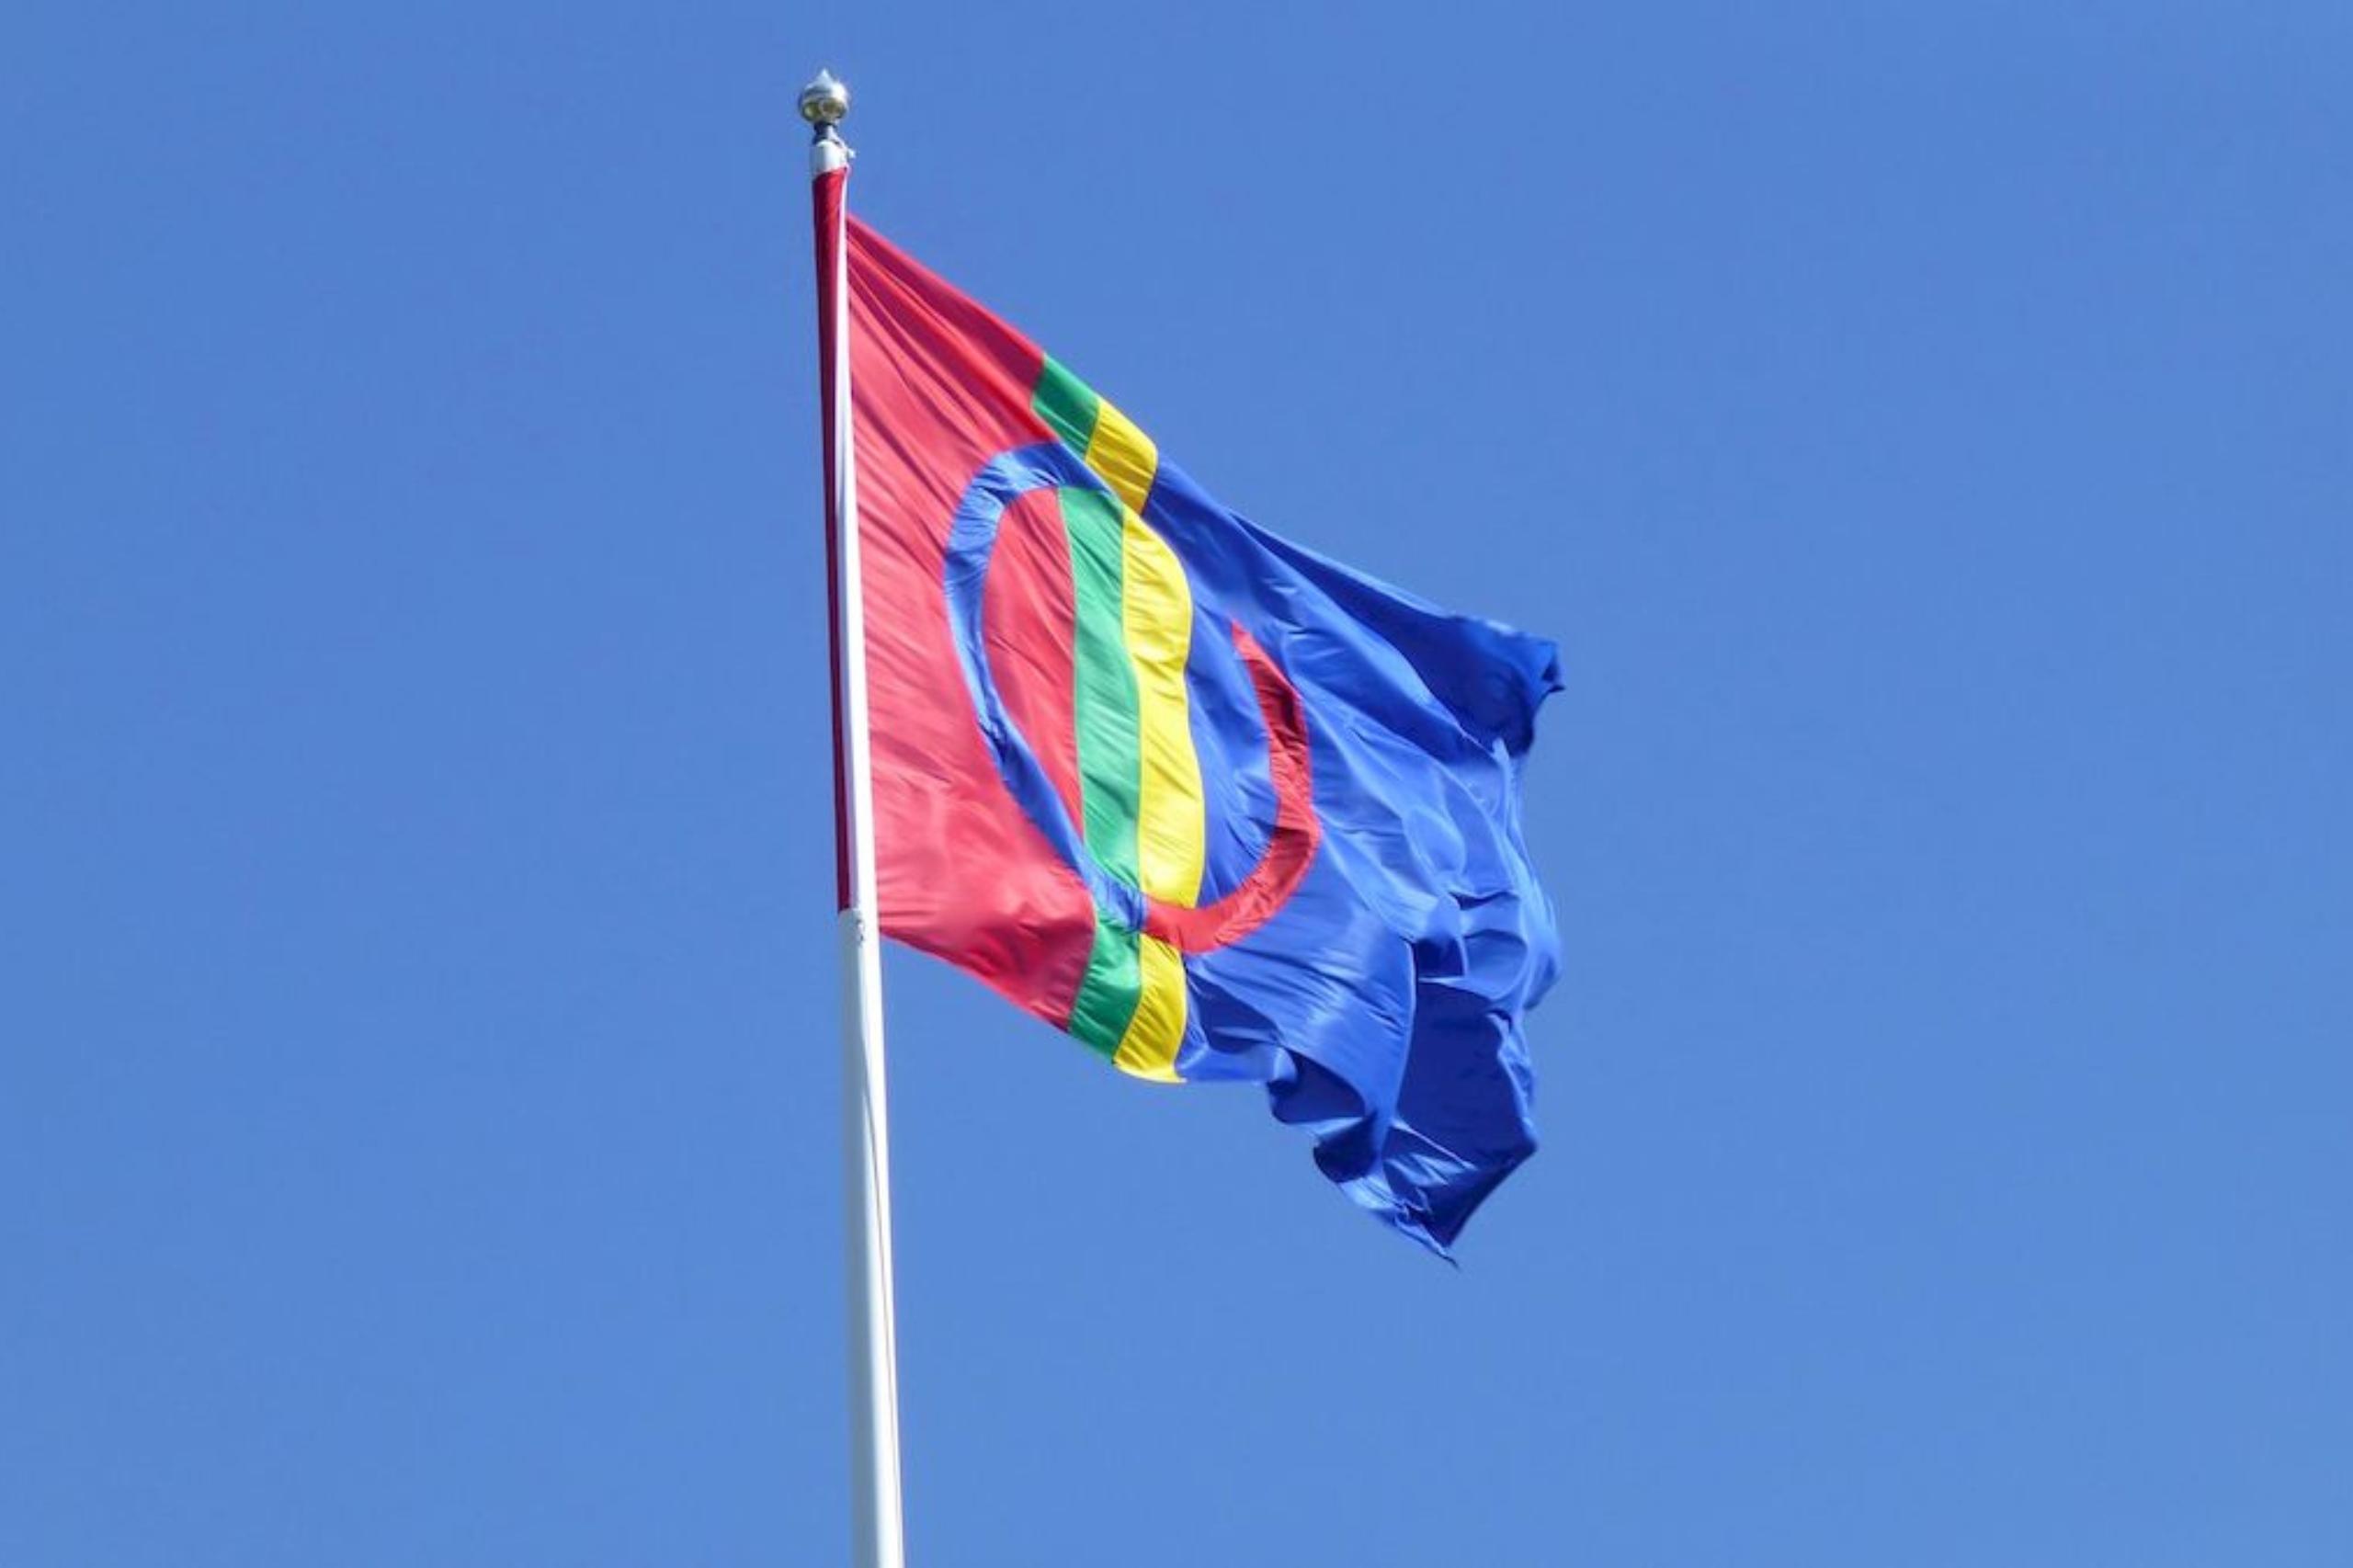 Die samische Flagge weht an einem Fahnenmast.